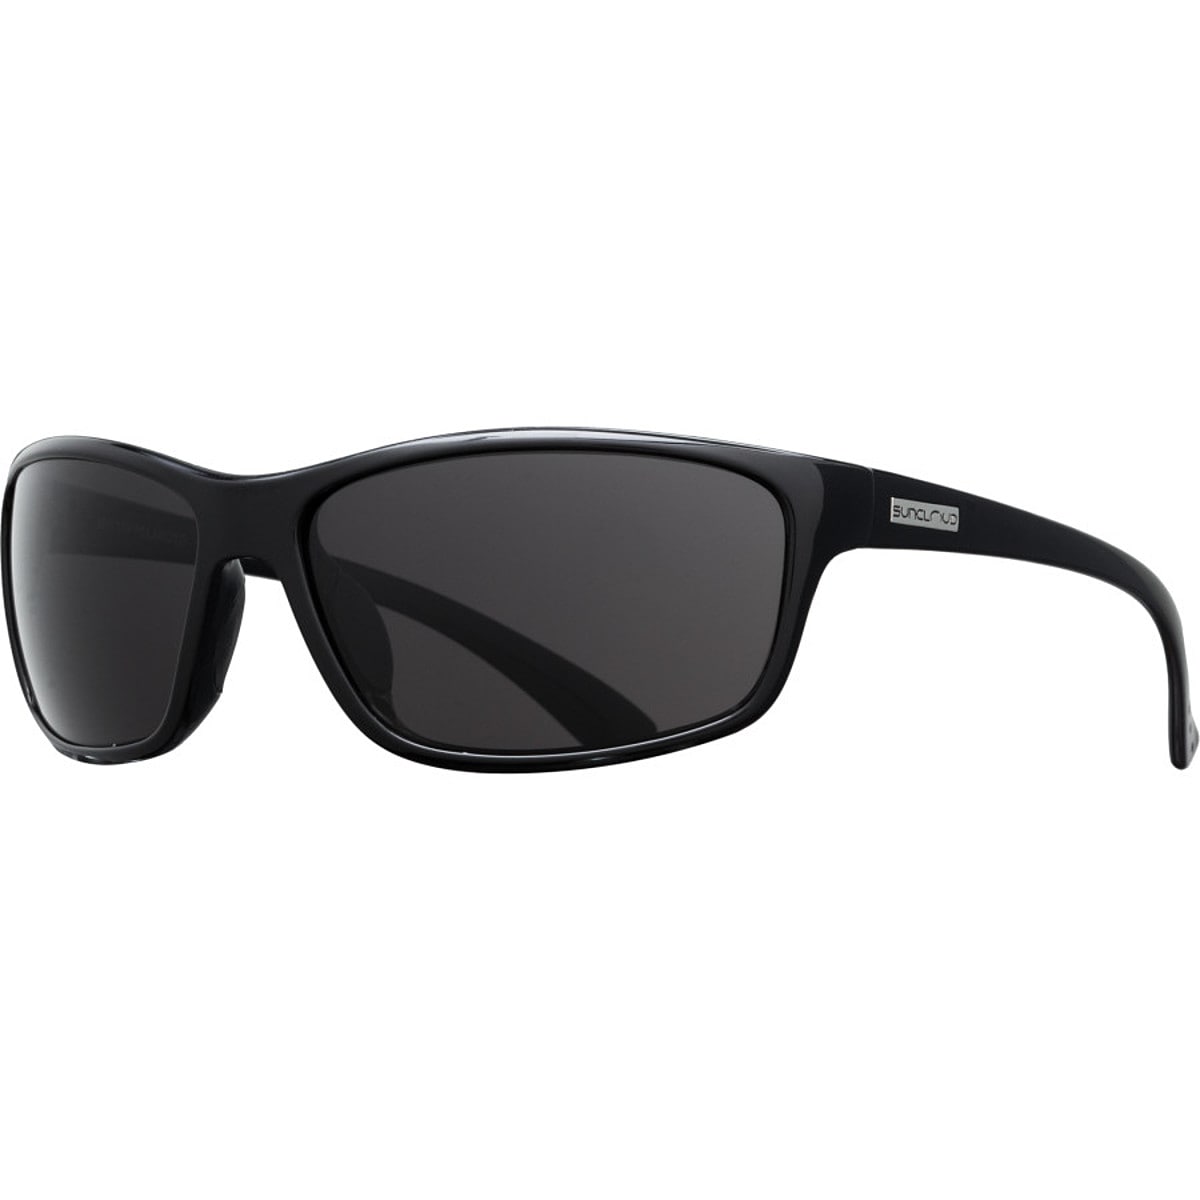 Поляризованные солнцезащитные очки sentry Suncloud Polarized Optics, цвет black/gray очки солнцезащитные stylemark polarized l1475a